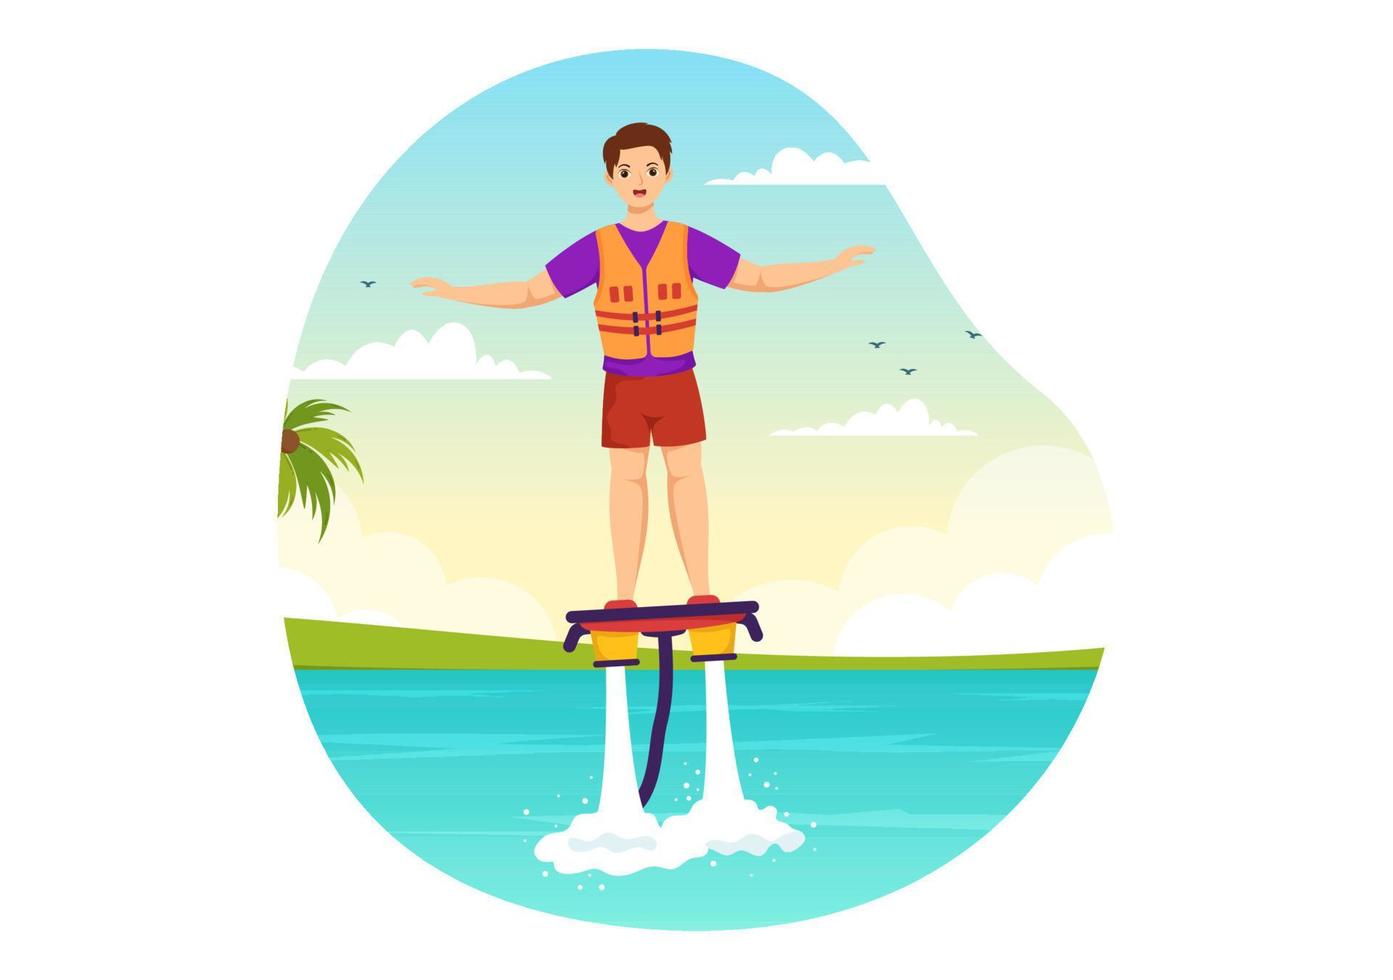 flyboard illustrazione con persone equitazione Jet imballare nel estate spiaggia vacanze nel piatto estremo acqua sport attività cartone animato mano disegnato modelli vettore